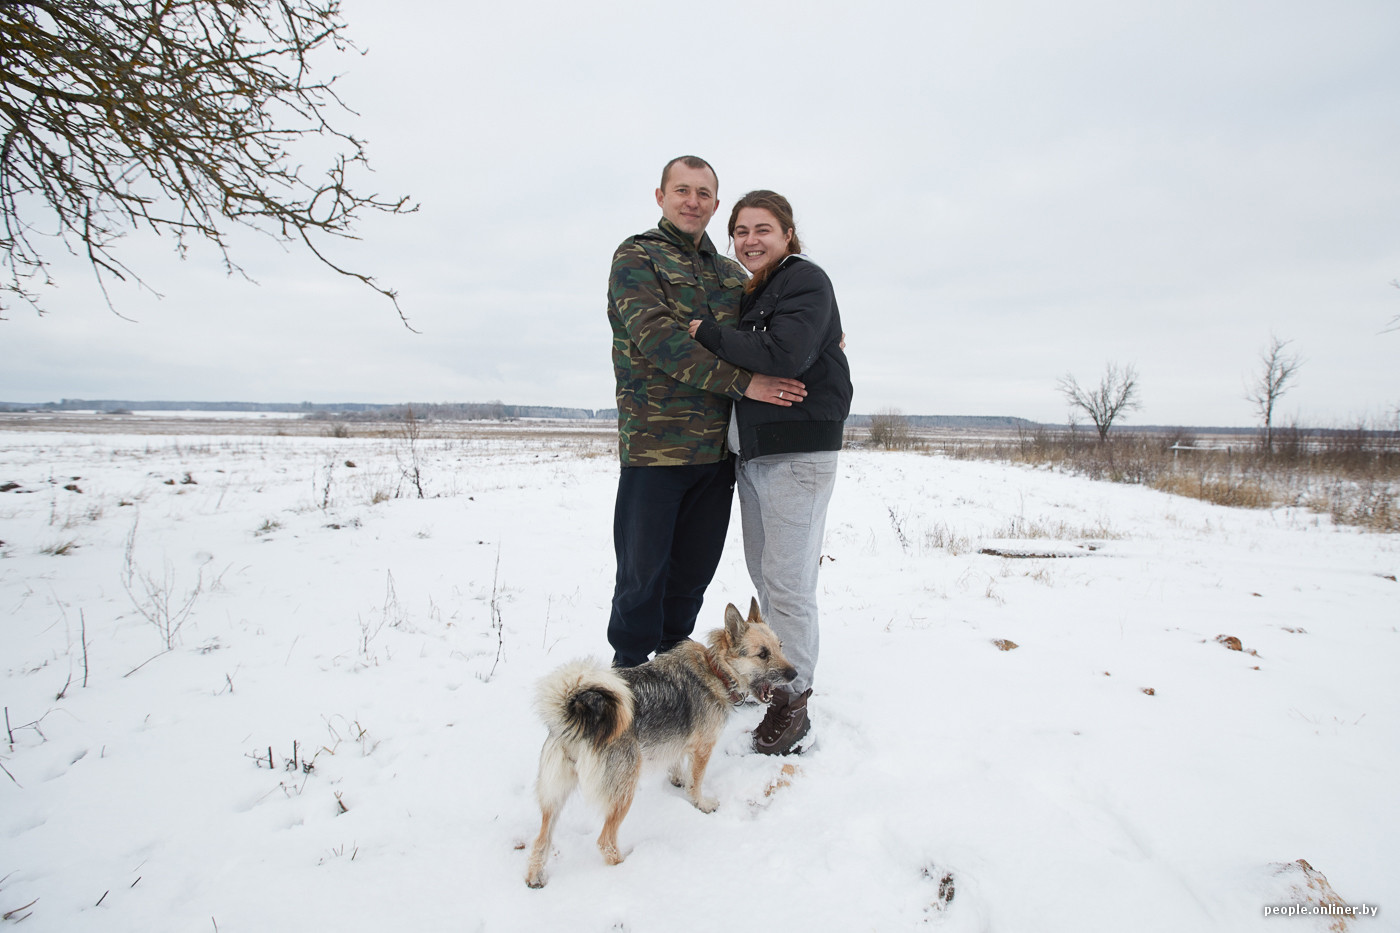 Белорусско-российская пара рассказывает о переезде в глушь и зарплатах в деревне